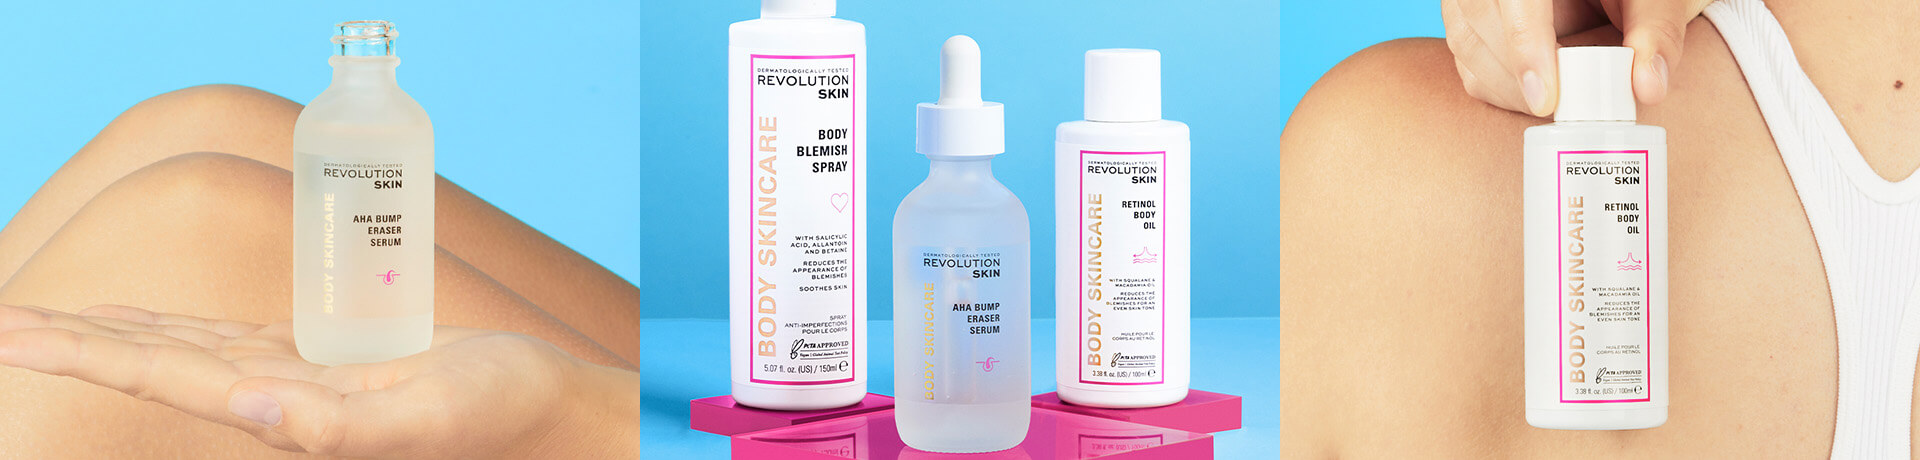 Wir präsentieren: die neue Körperpflegeserie von Revolution Skincare!